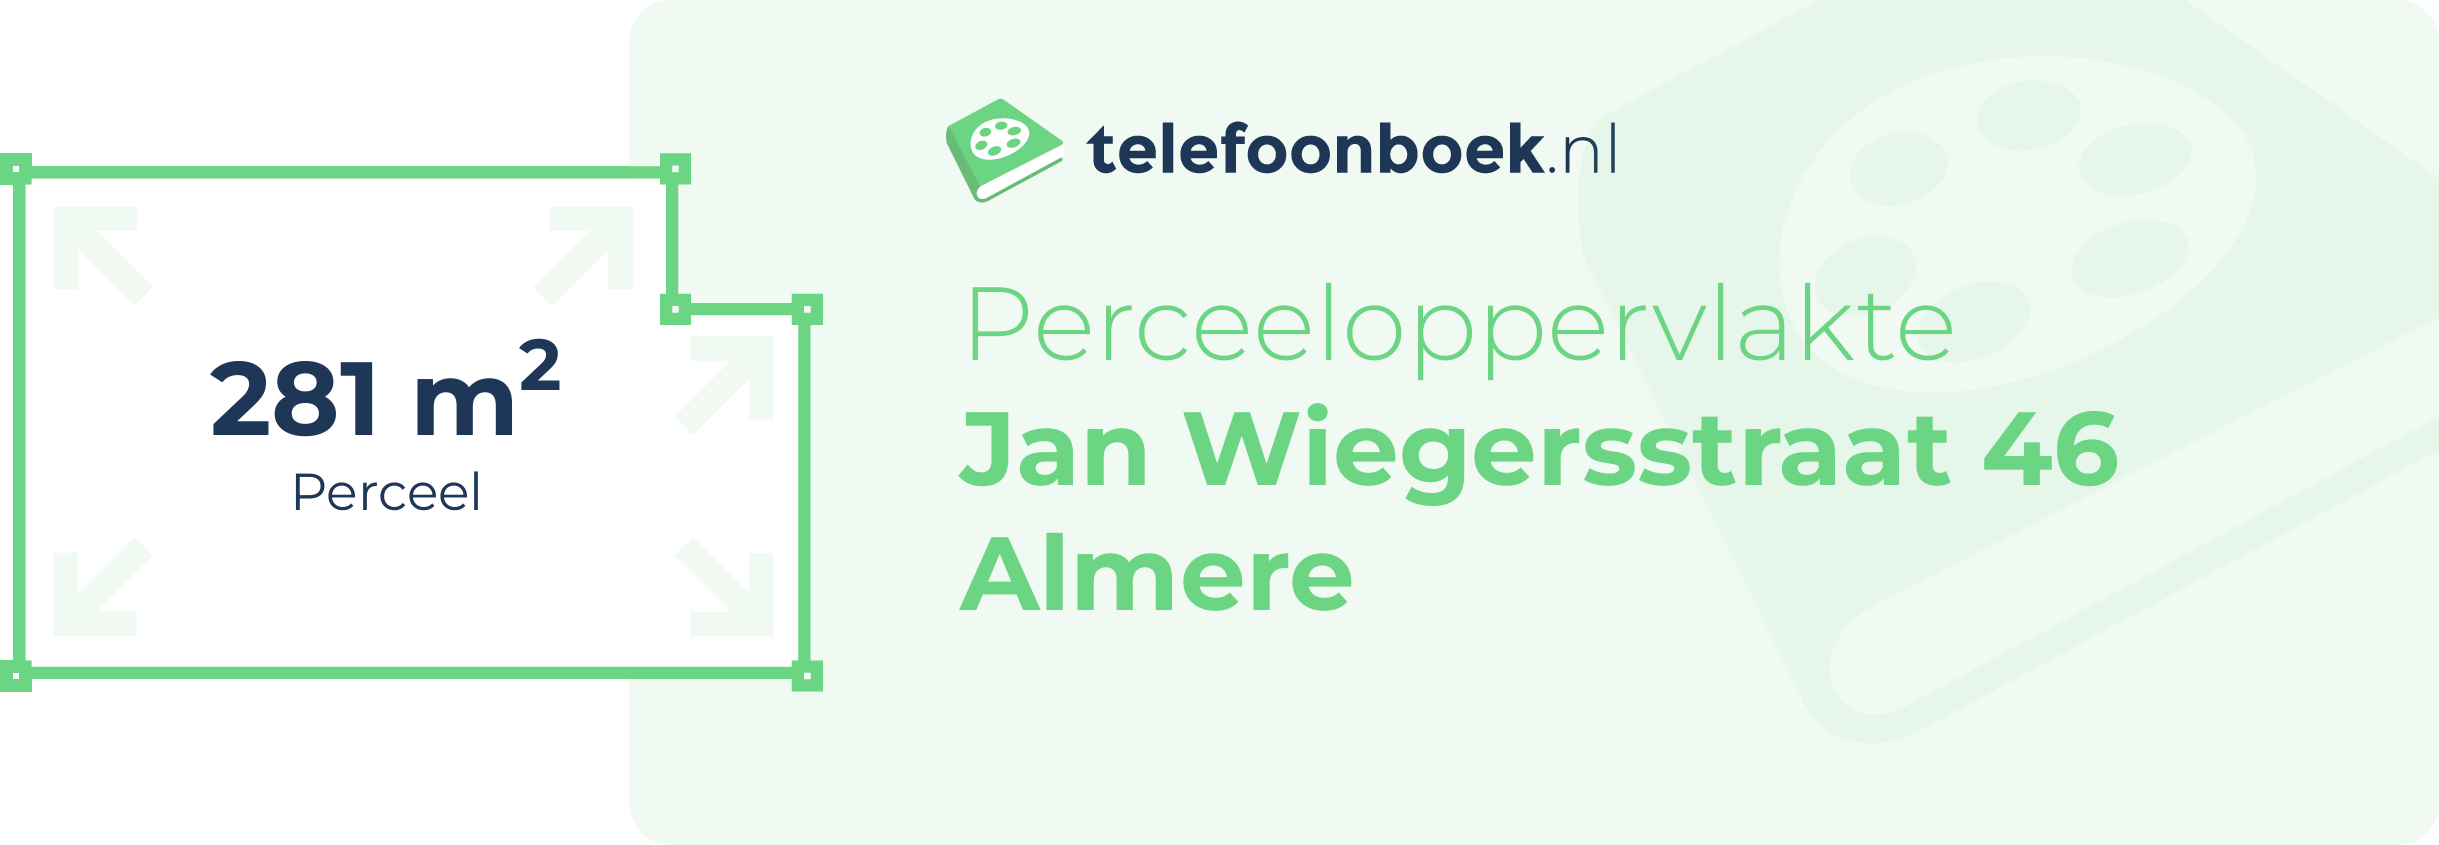 Perceeloppervlakte Jan Wiegersstraat 46 Almere